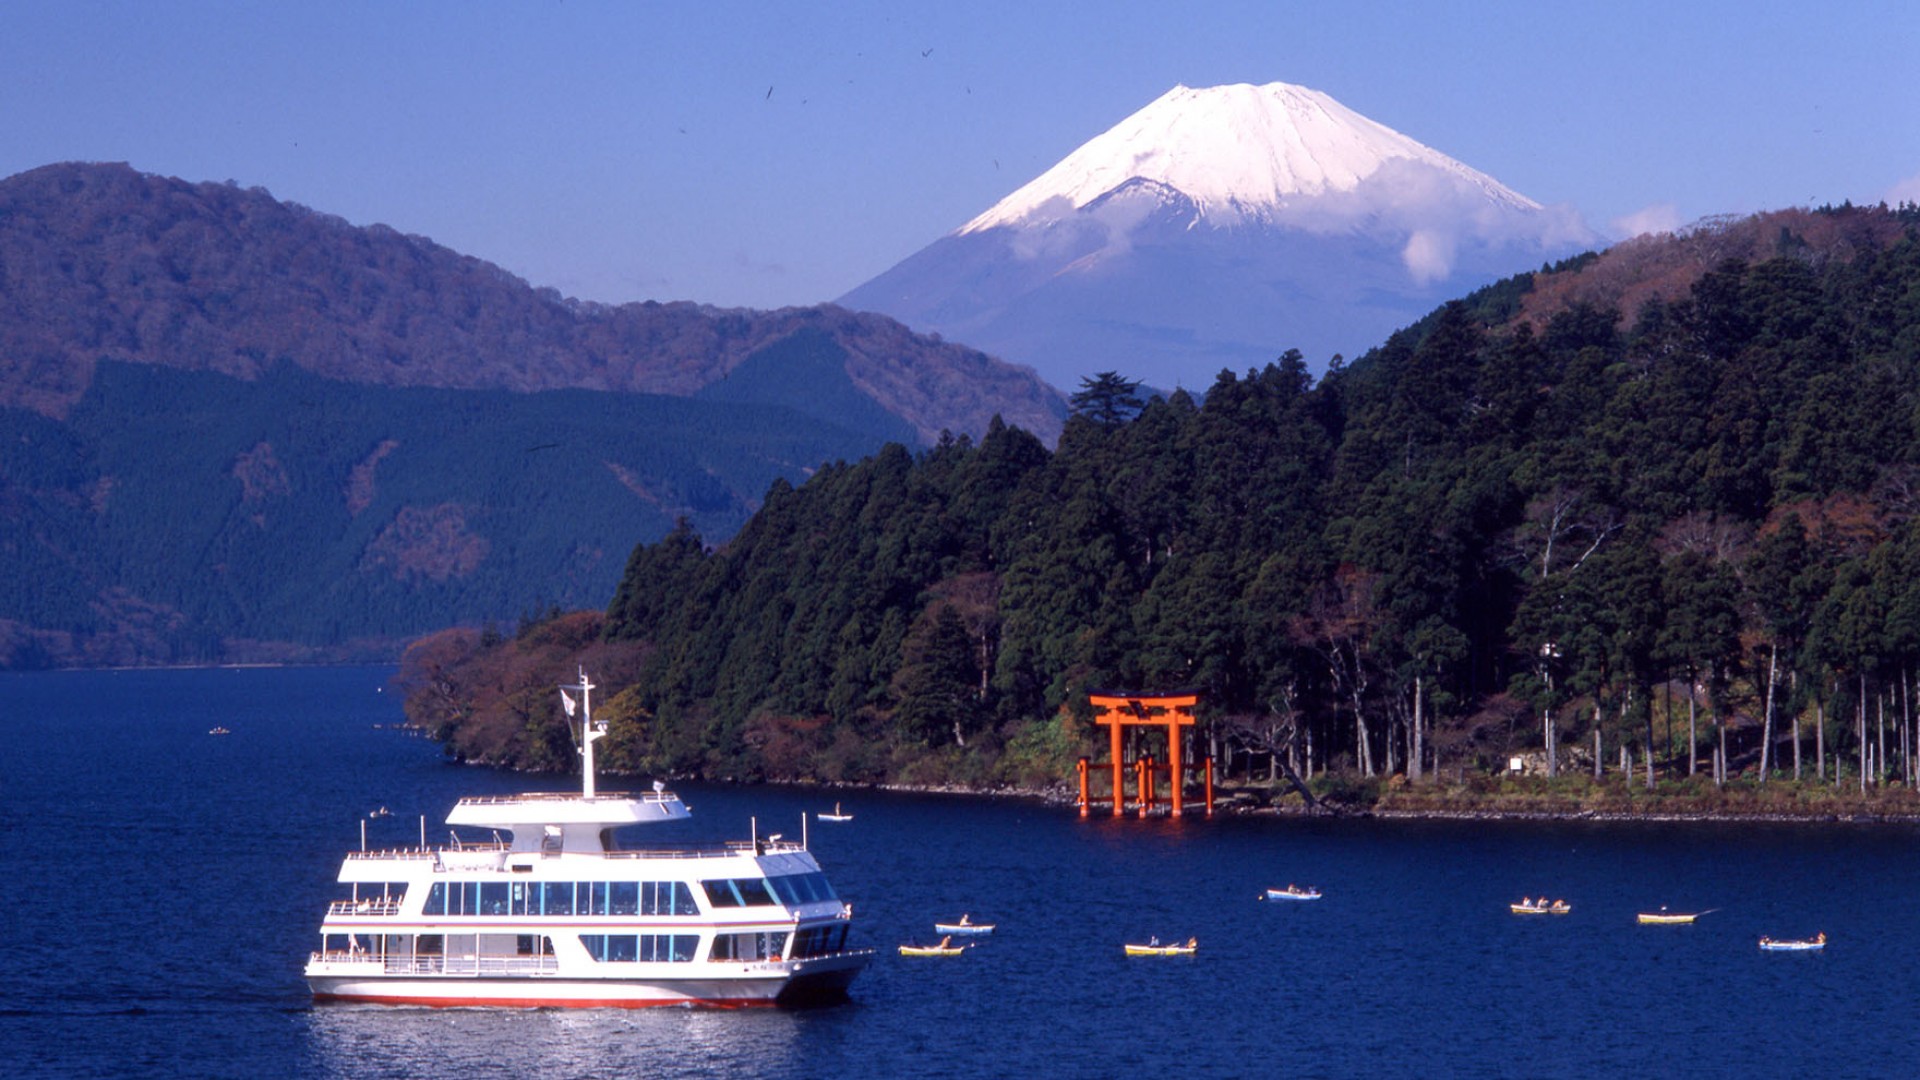 Hakone Lake Ashinoko Pleasure Boat - Destinations - Tokyo Day Trip